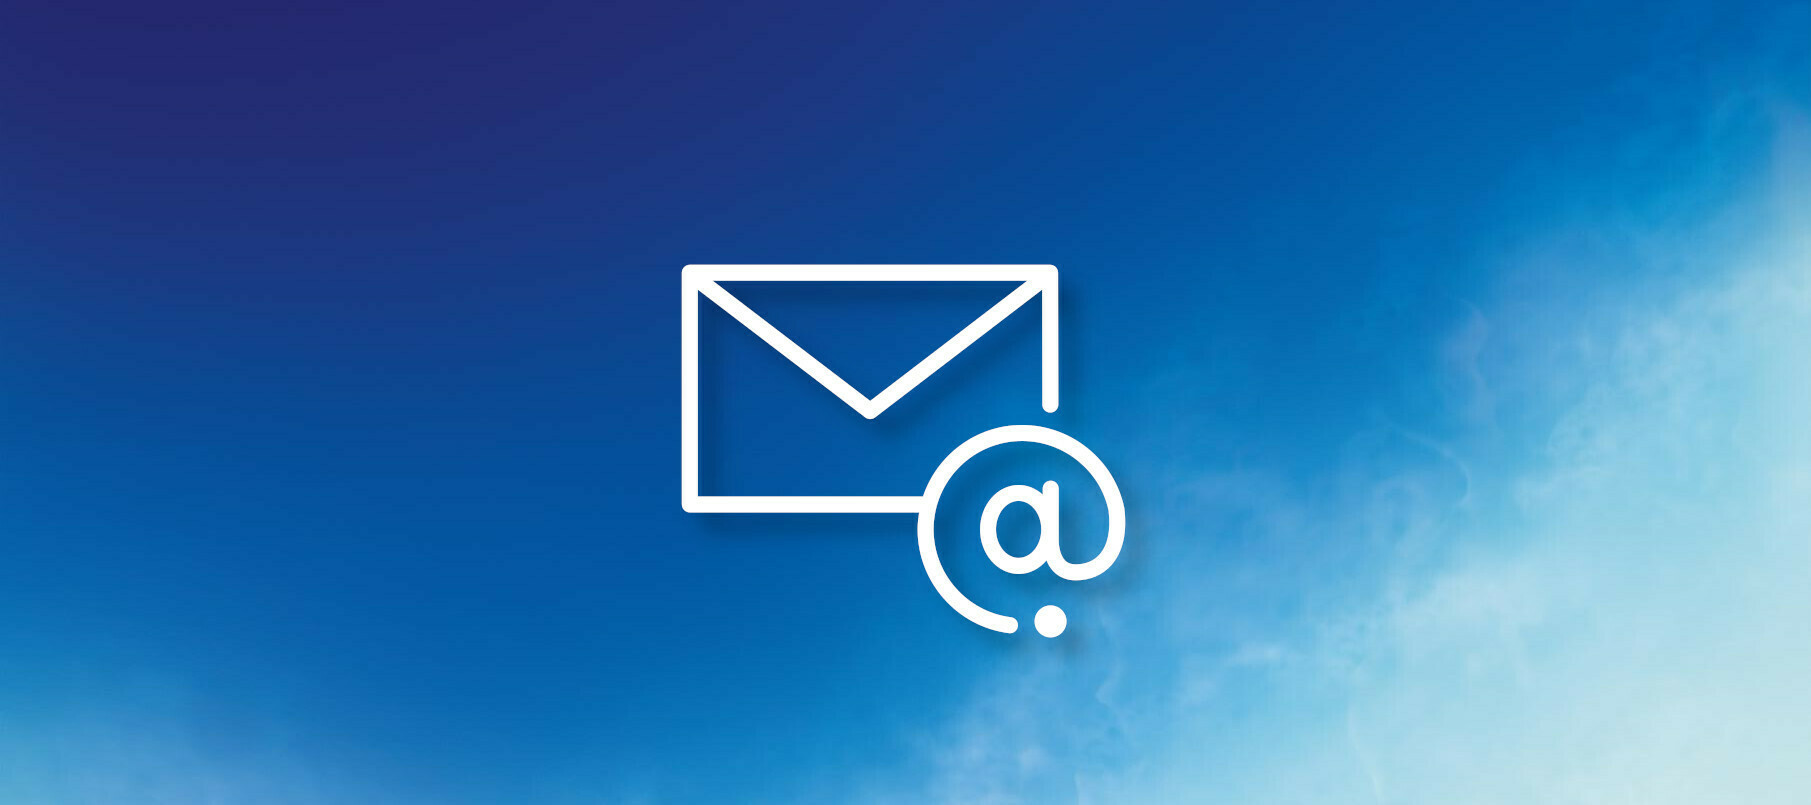 Abschaltung der Alice E-Mail-Domains - Tipps für die Umstellung